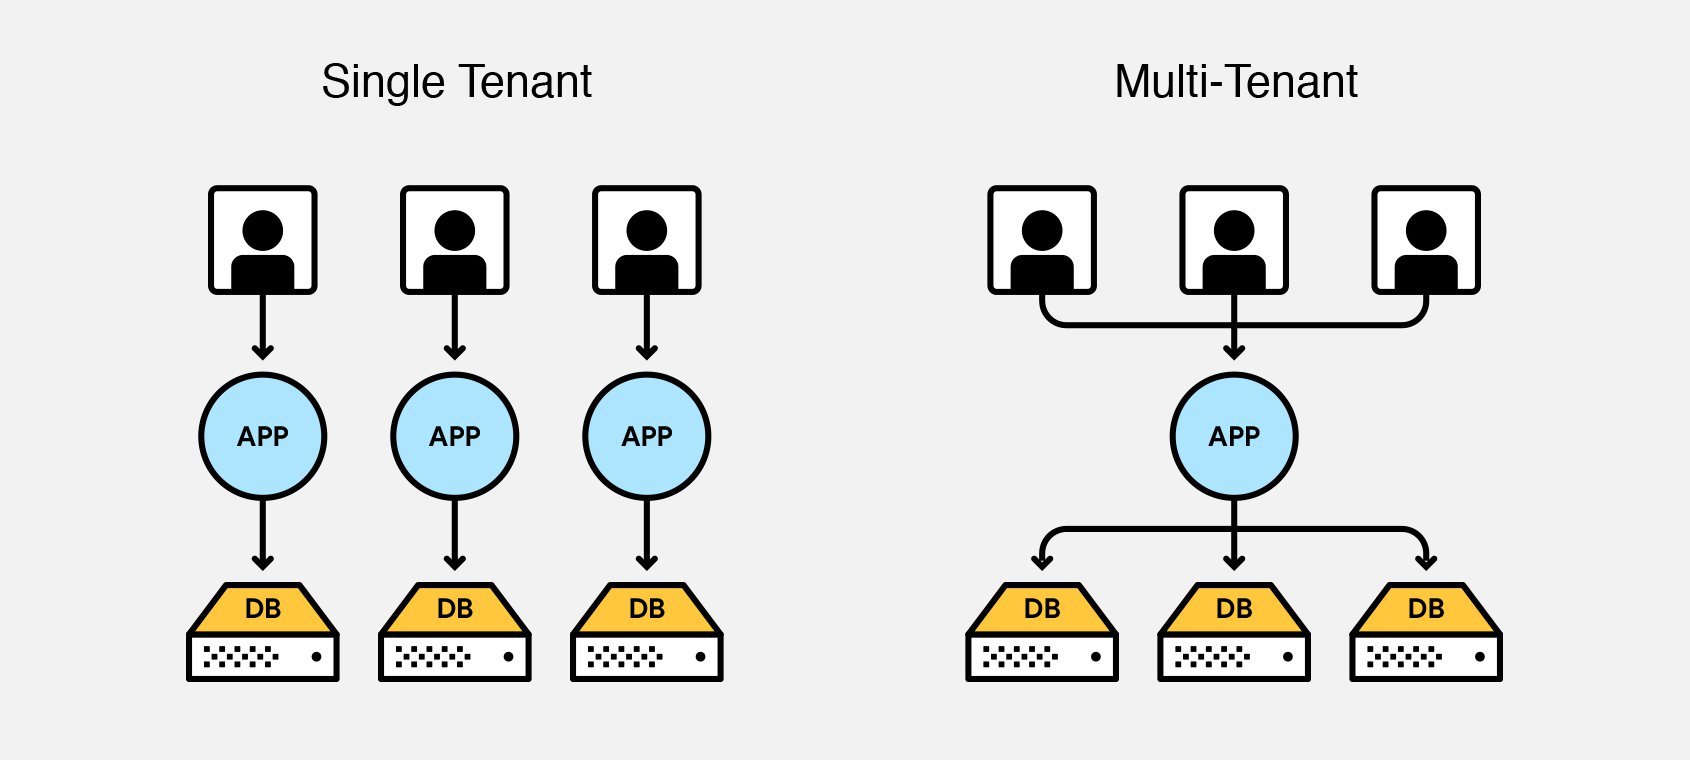 Single tenancy vs multi-tenancy